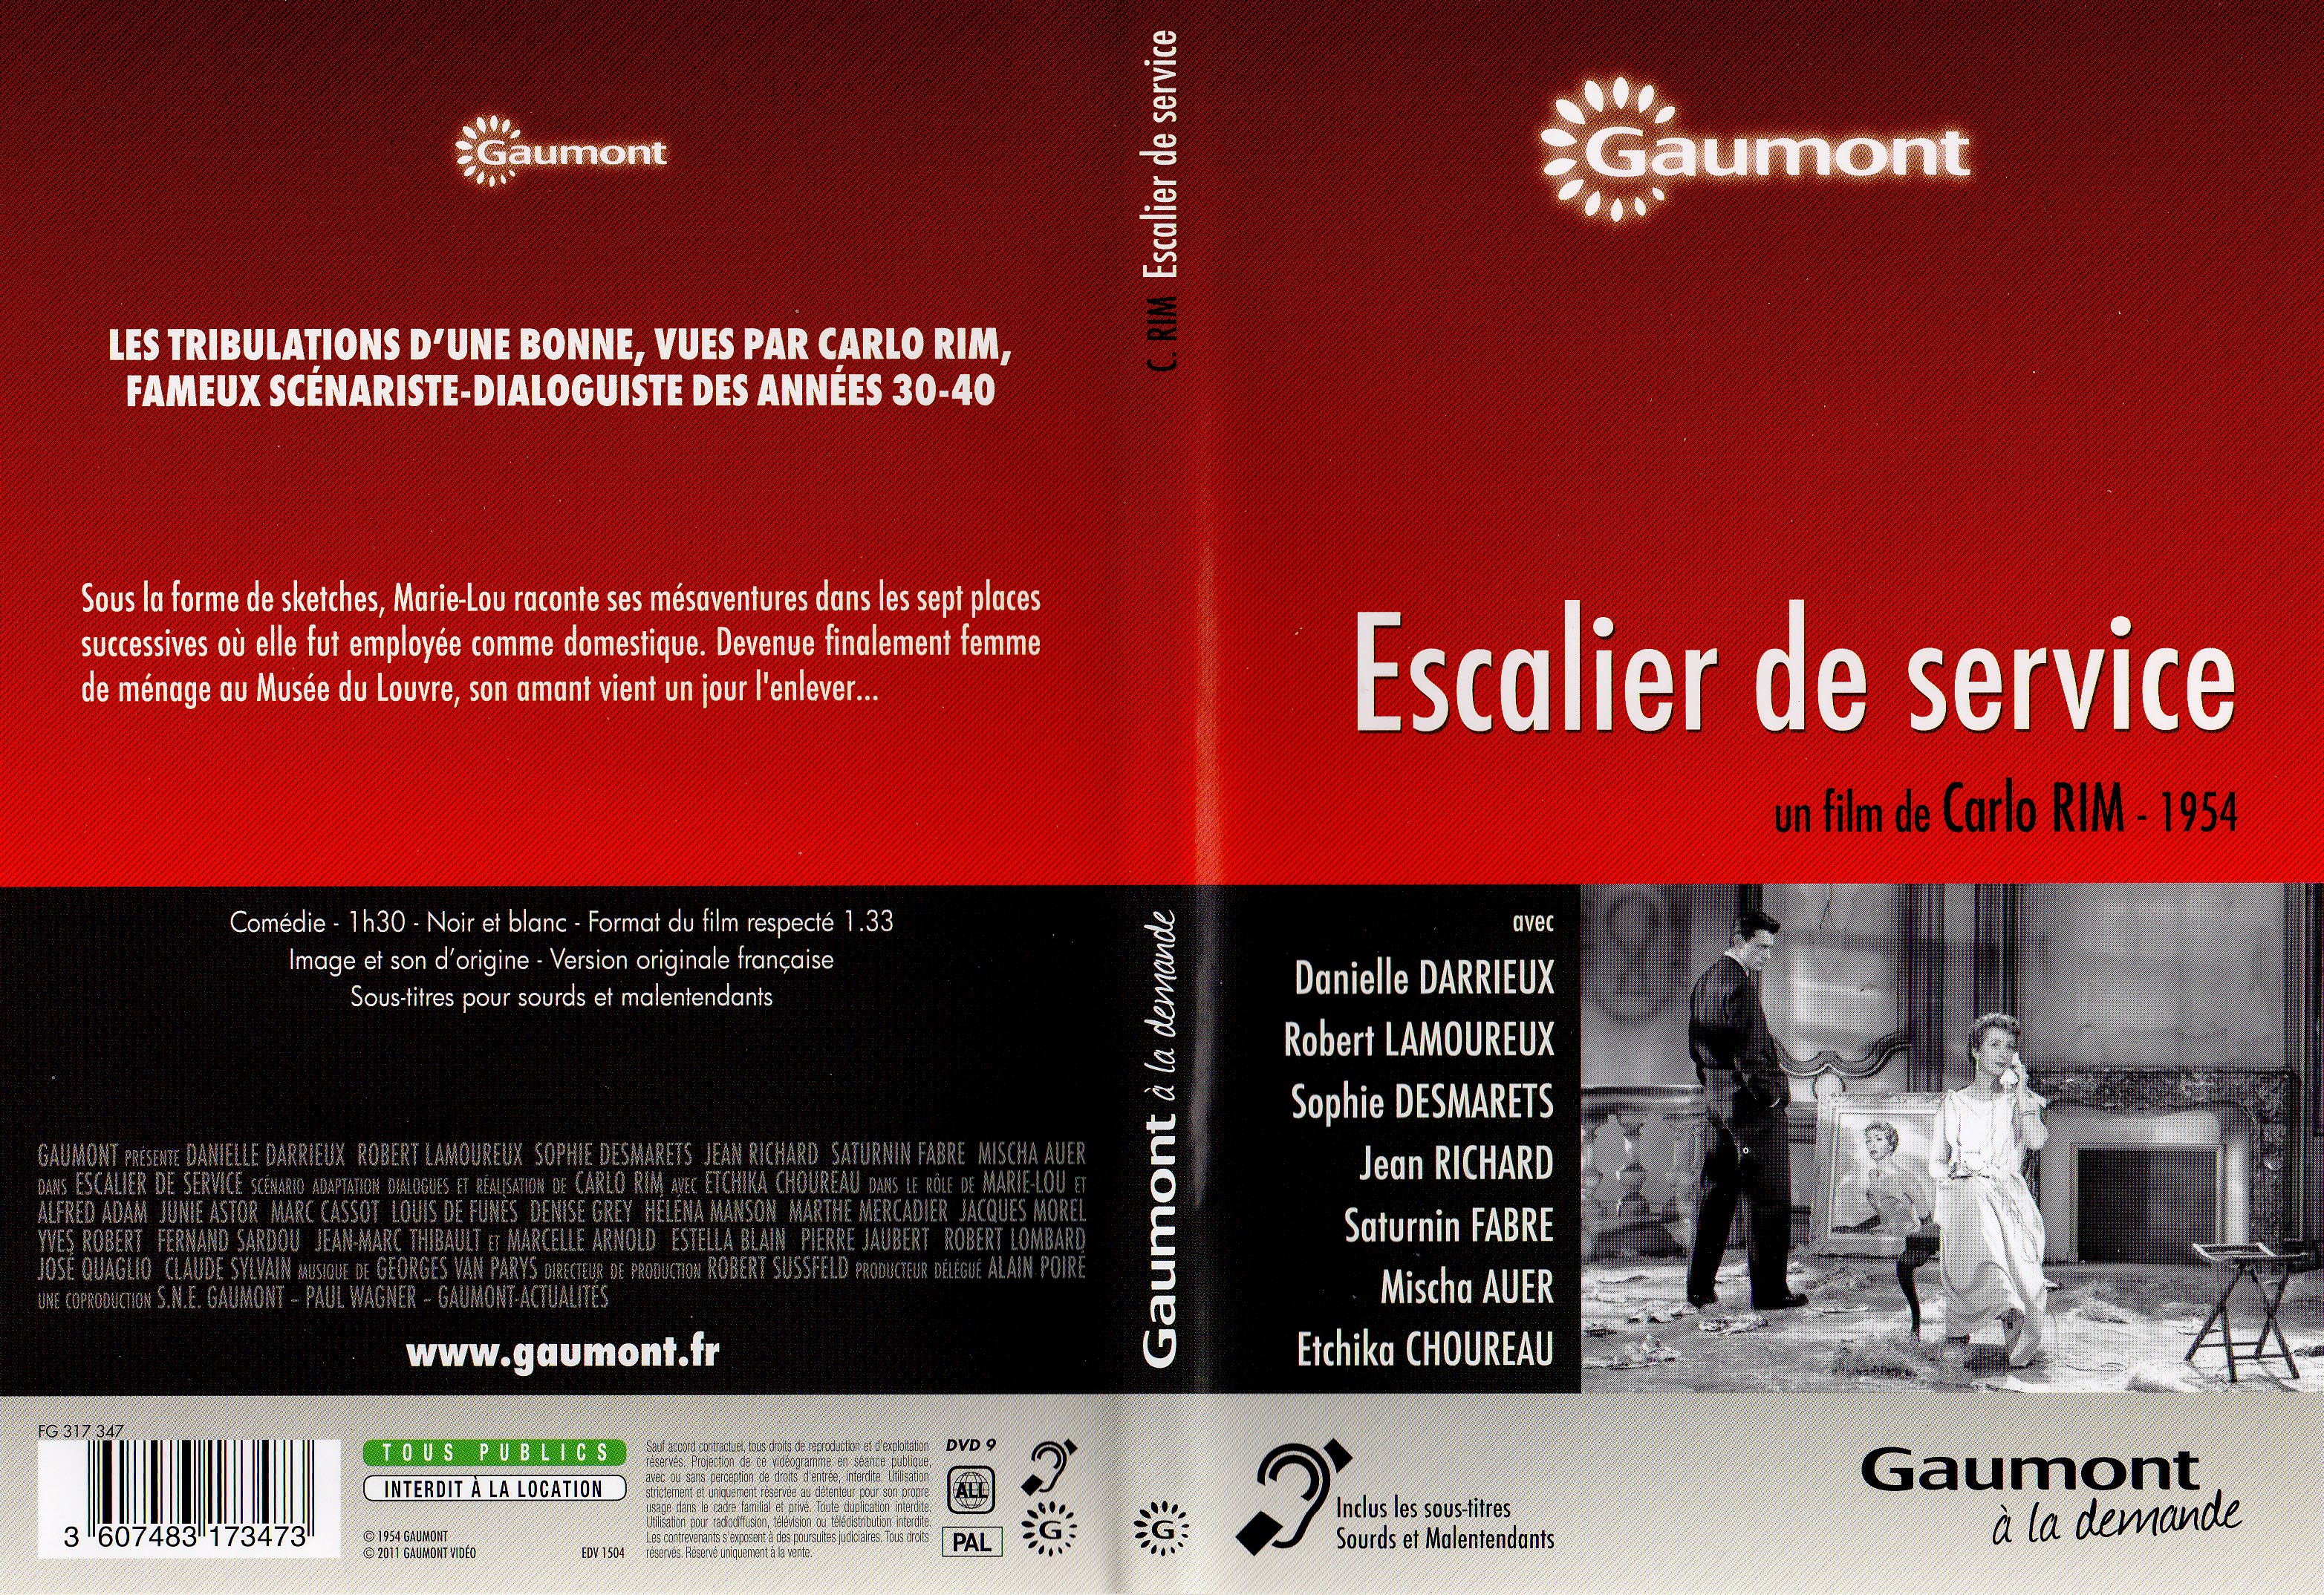 Jaquette DVD Escalier de service v2